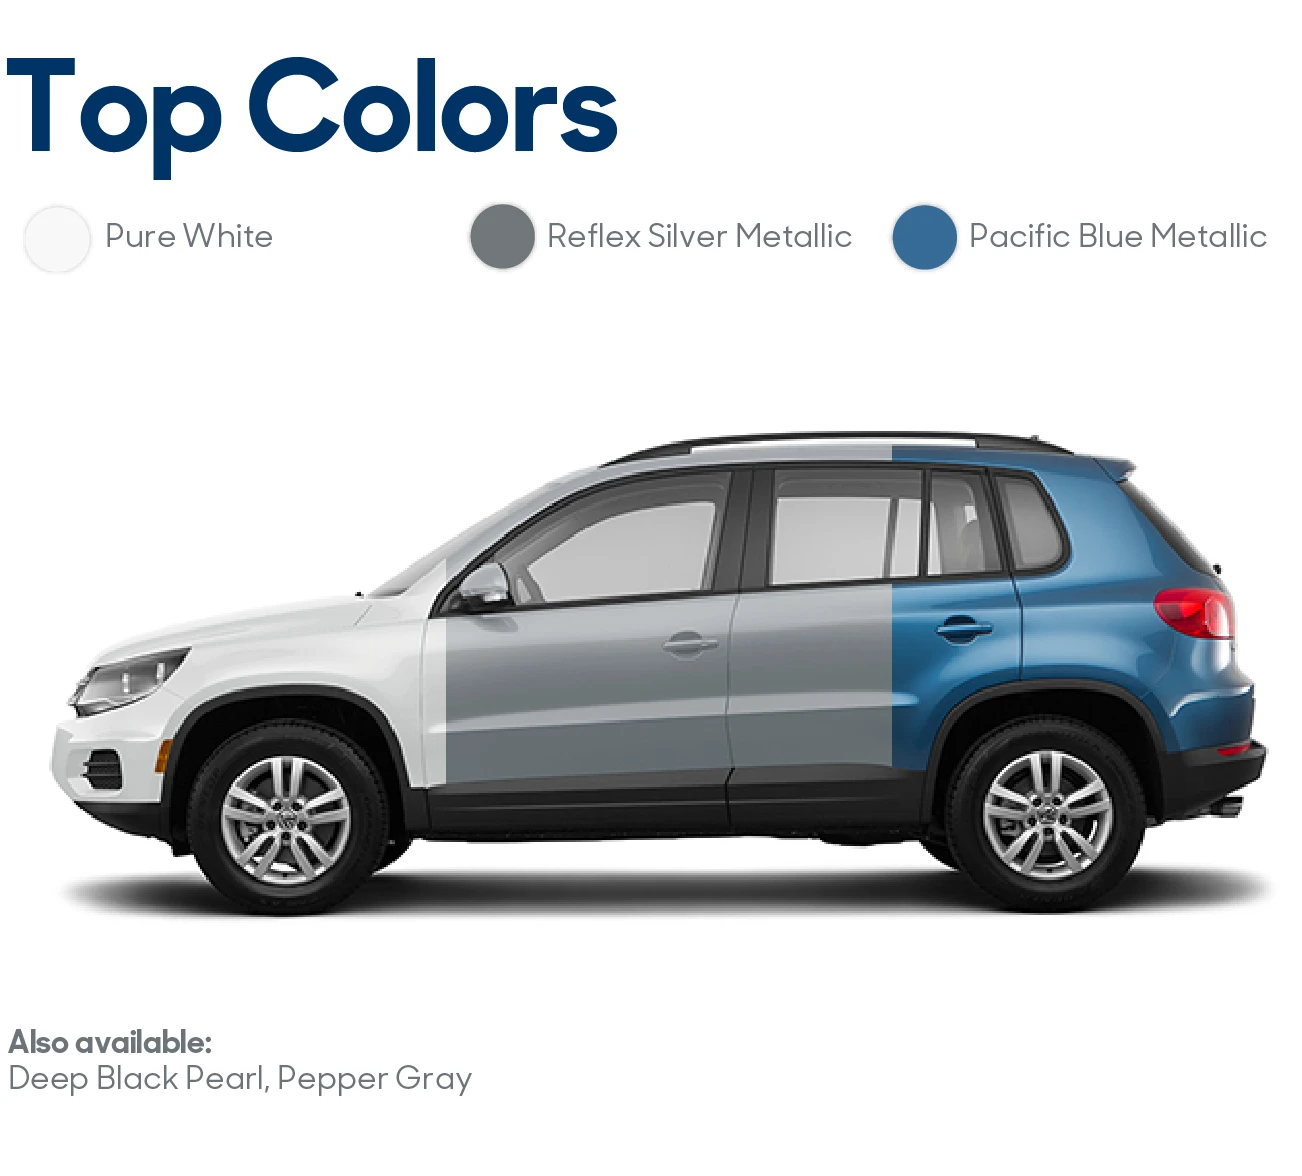 2017 Volkswagen Tiguan Review: Top Colors | CarMax